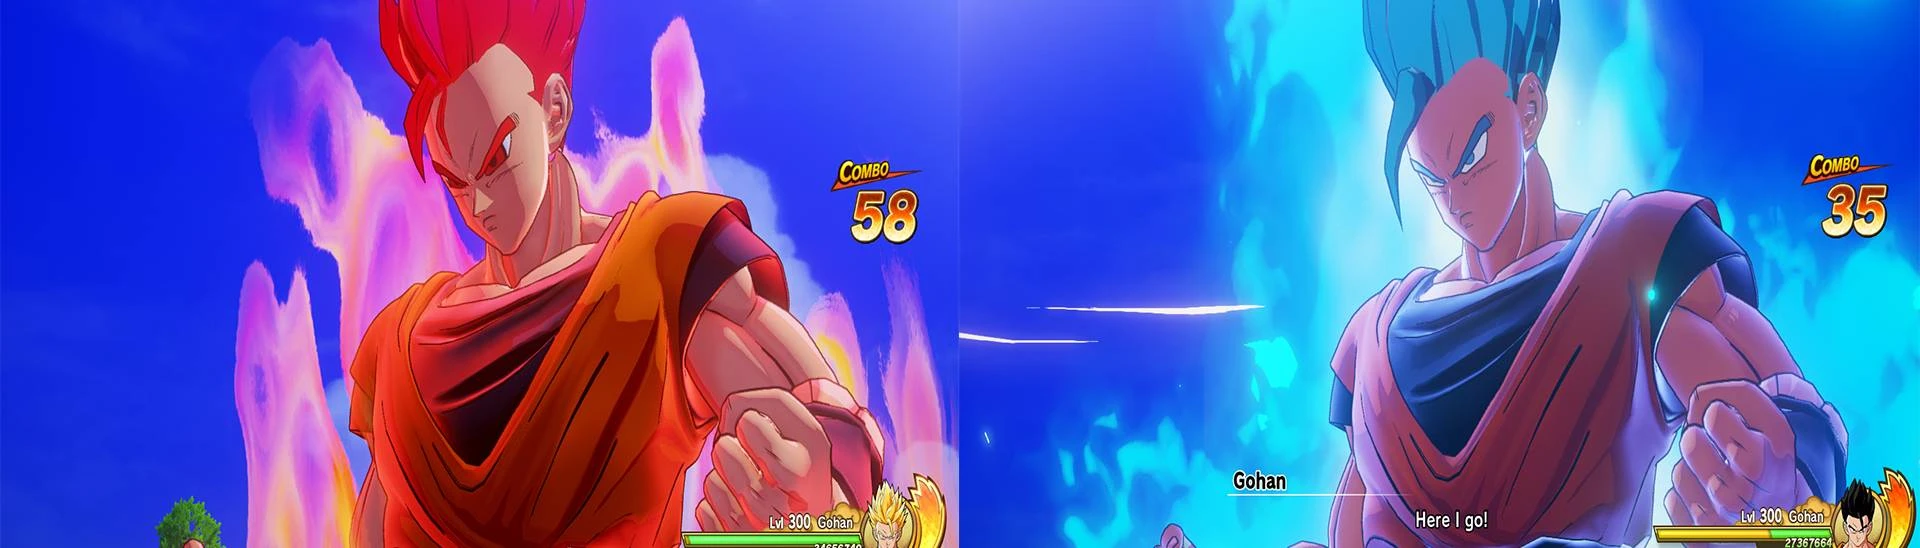 Super Saiyan Goku by AbsolutelyYOSHAAA on DeviantArt